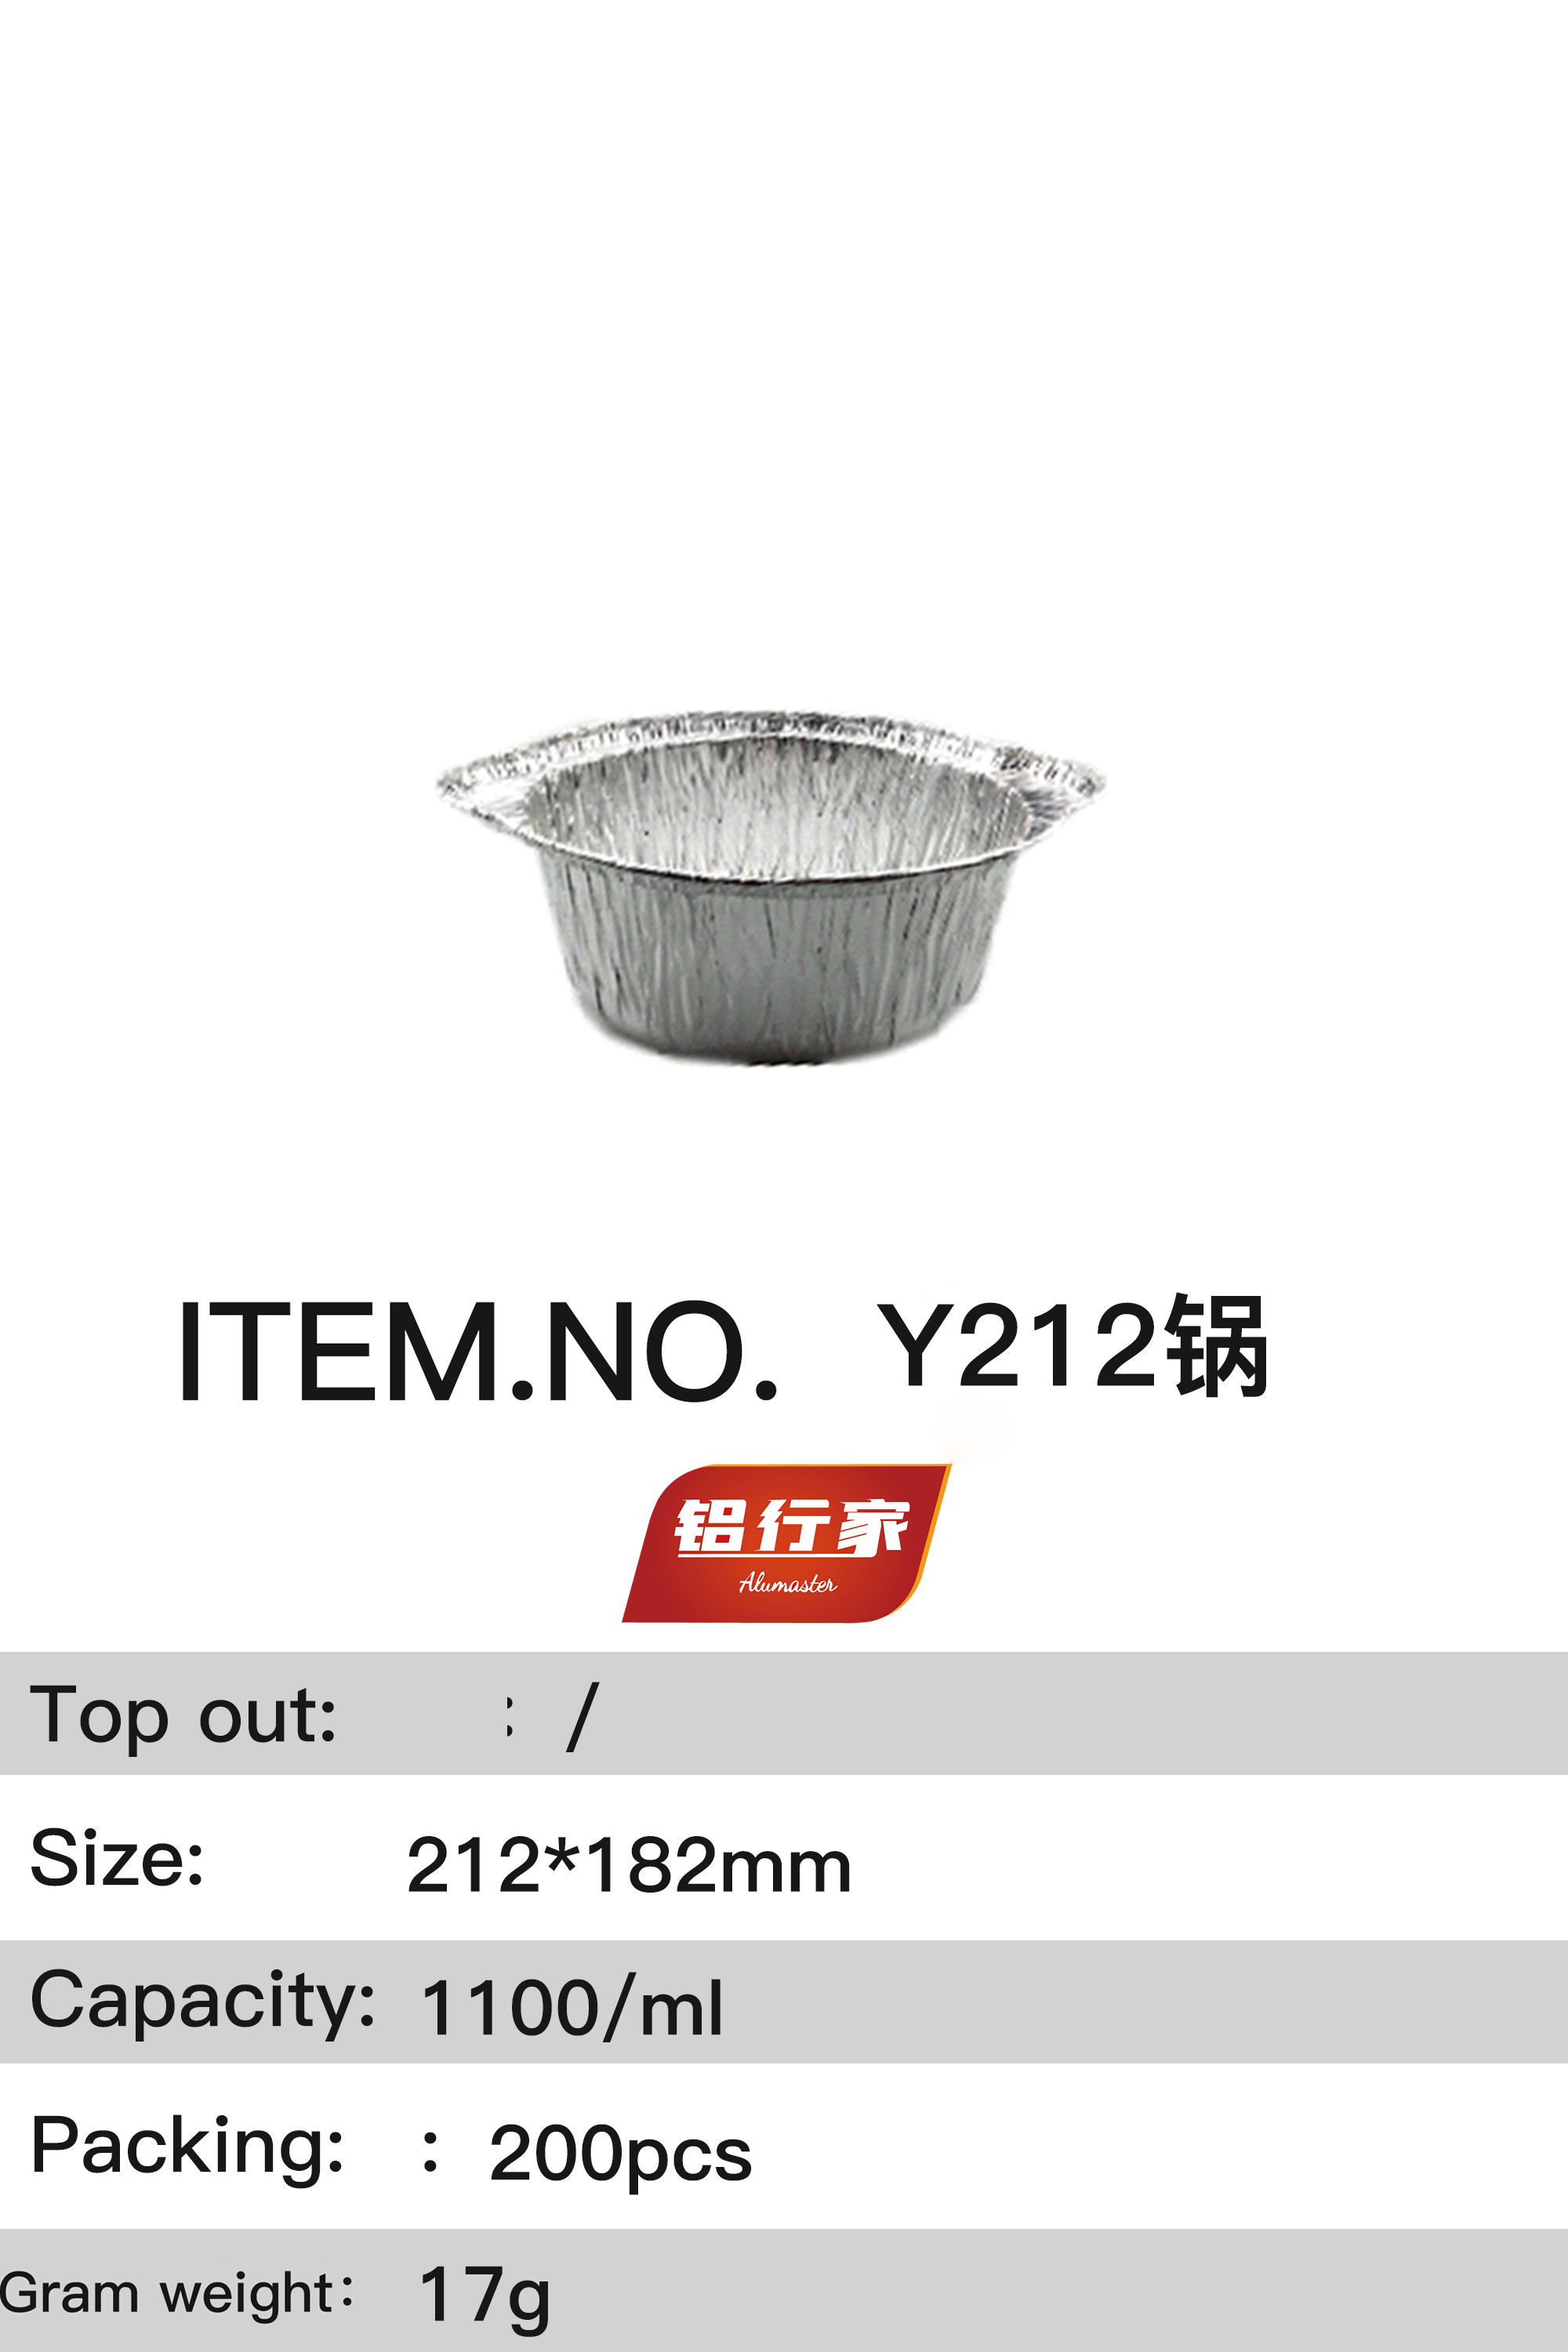 铝行家铝箔餐盒Y212锅